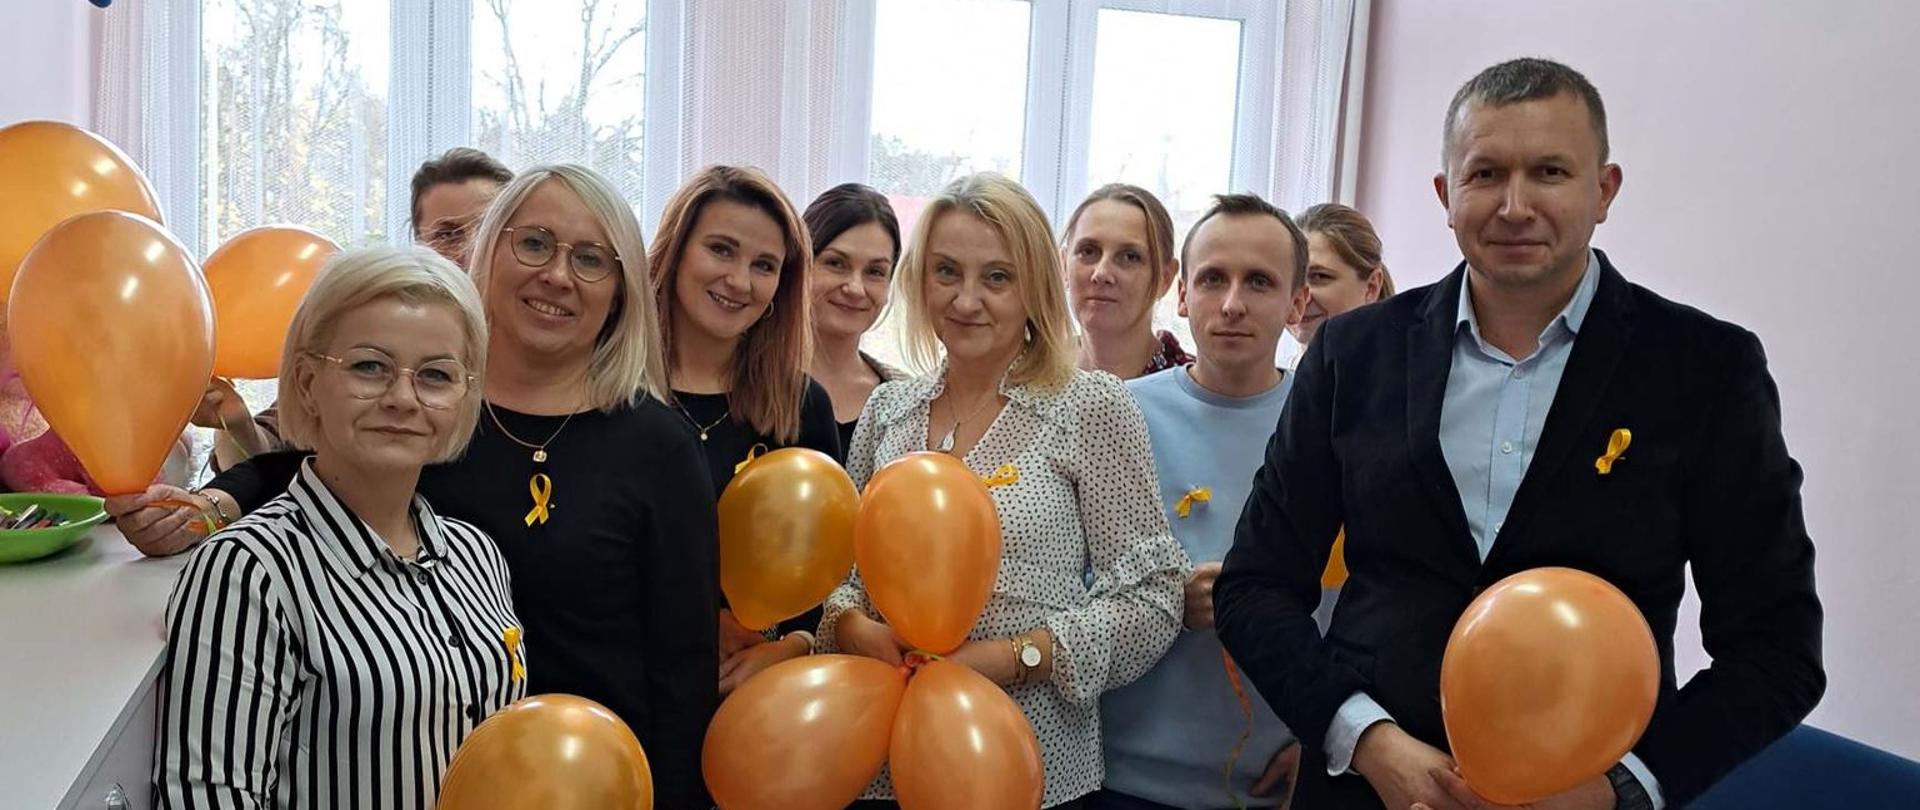 Zdjęcie przedstawia pracowników Powiatowego Centrum Pomocy Rodzinie w Przasnyszu promujących kampanię 19 dni przeciwko przemocy i krzywdzeniu dzieci i młodzieży - przypinając do ubrań pomarańczową wstążkę, udzielając informacji o akcji oraz rozdając pomarańczowe balony.